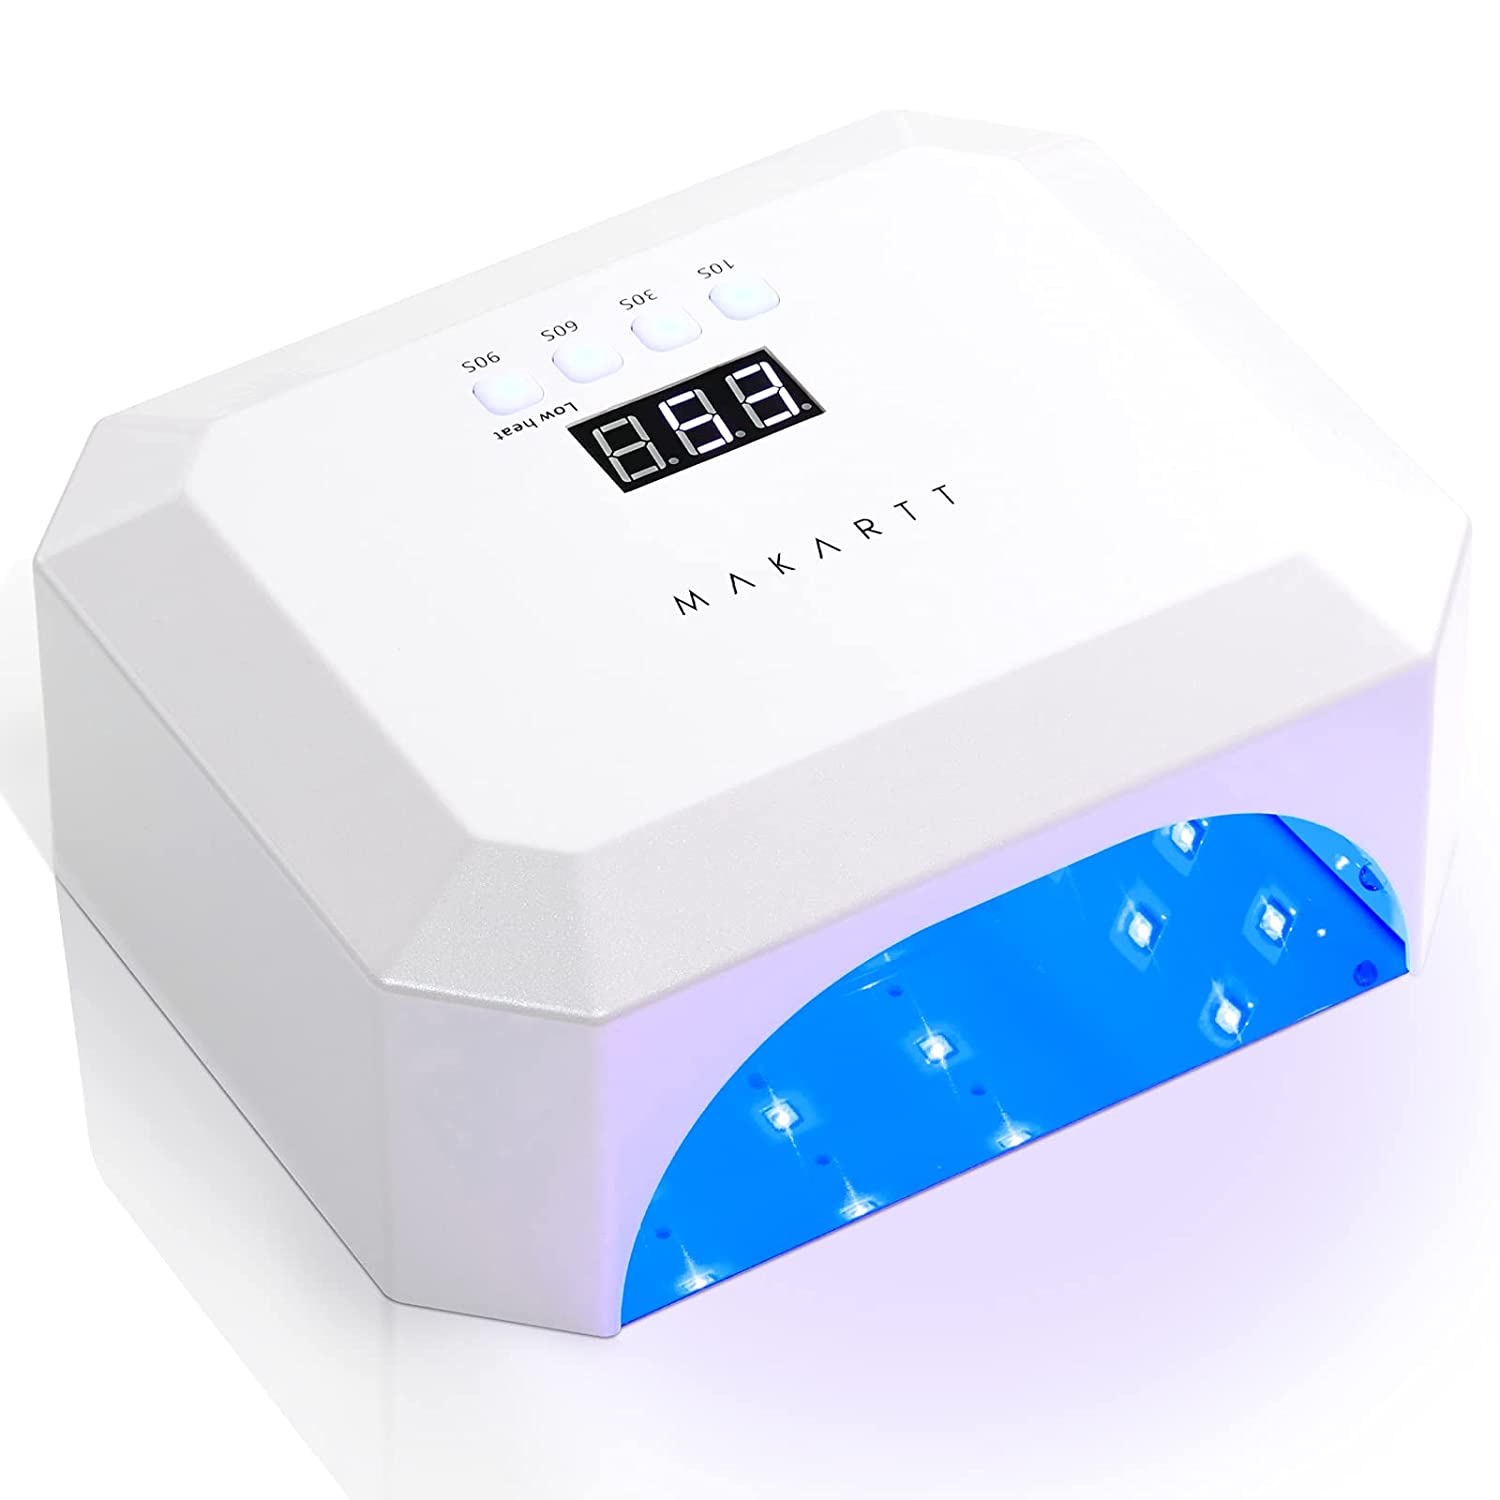 Cordless UV LED Nail Lamp, 54W Gel UV Light Dryer for Nails Gel